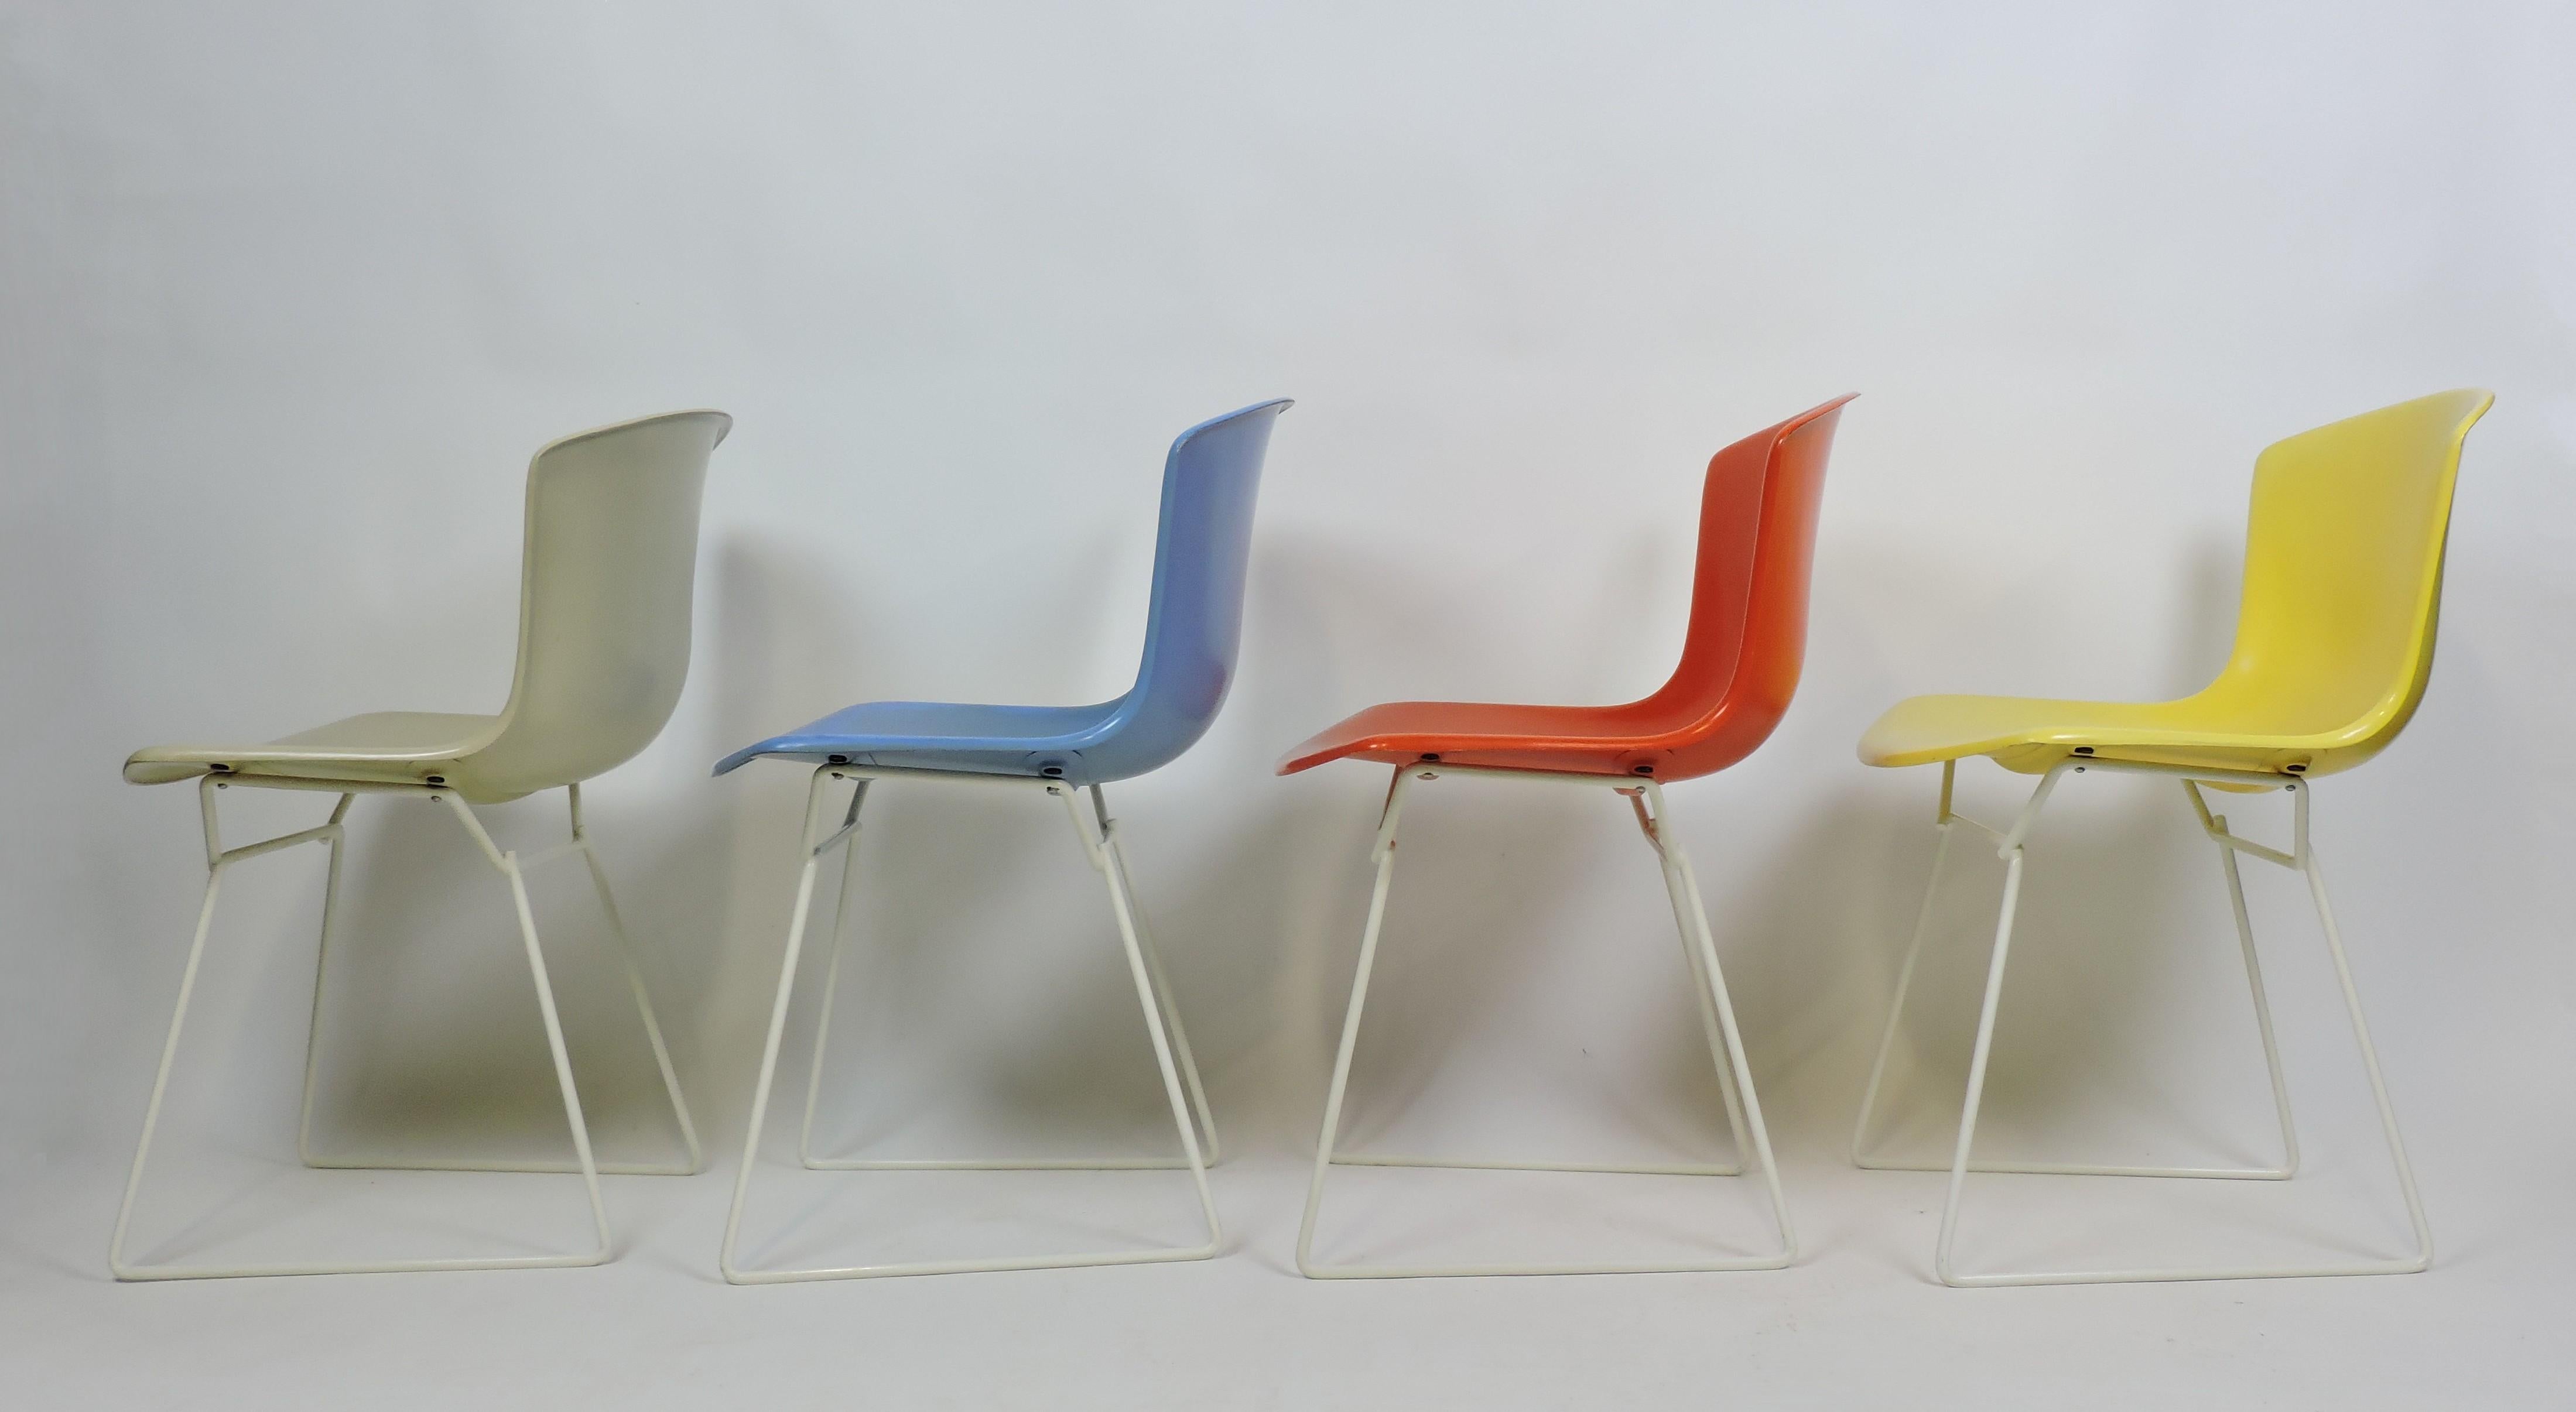 Set di quattro sedie a guscio modellato disegnate da Harry Bertoia e prodotte da Knoll. Questo primo set, che ha debuttato nel 1960, risale al 1963 e comprende quattro colori - beige, blu, rosso e giallo - su una cornice bianca per un look colorato